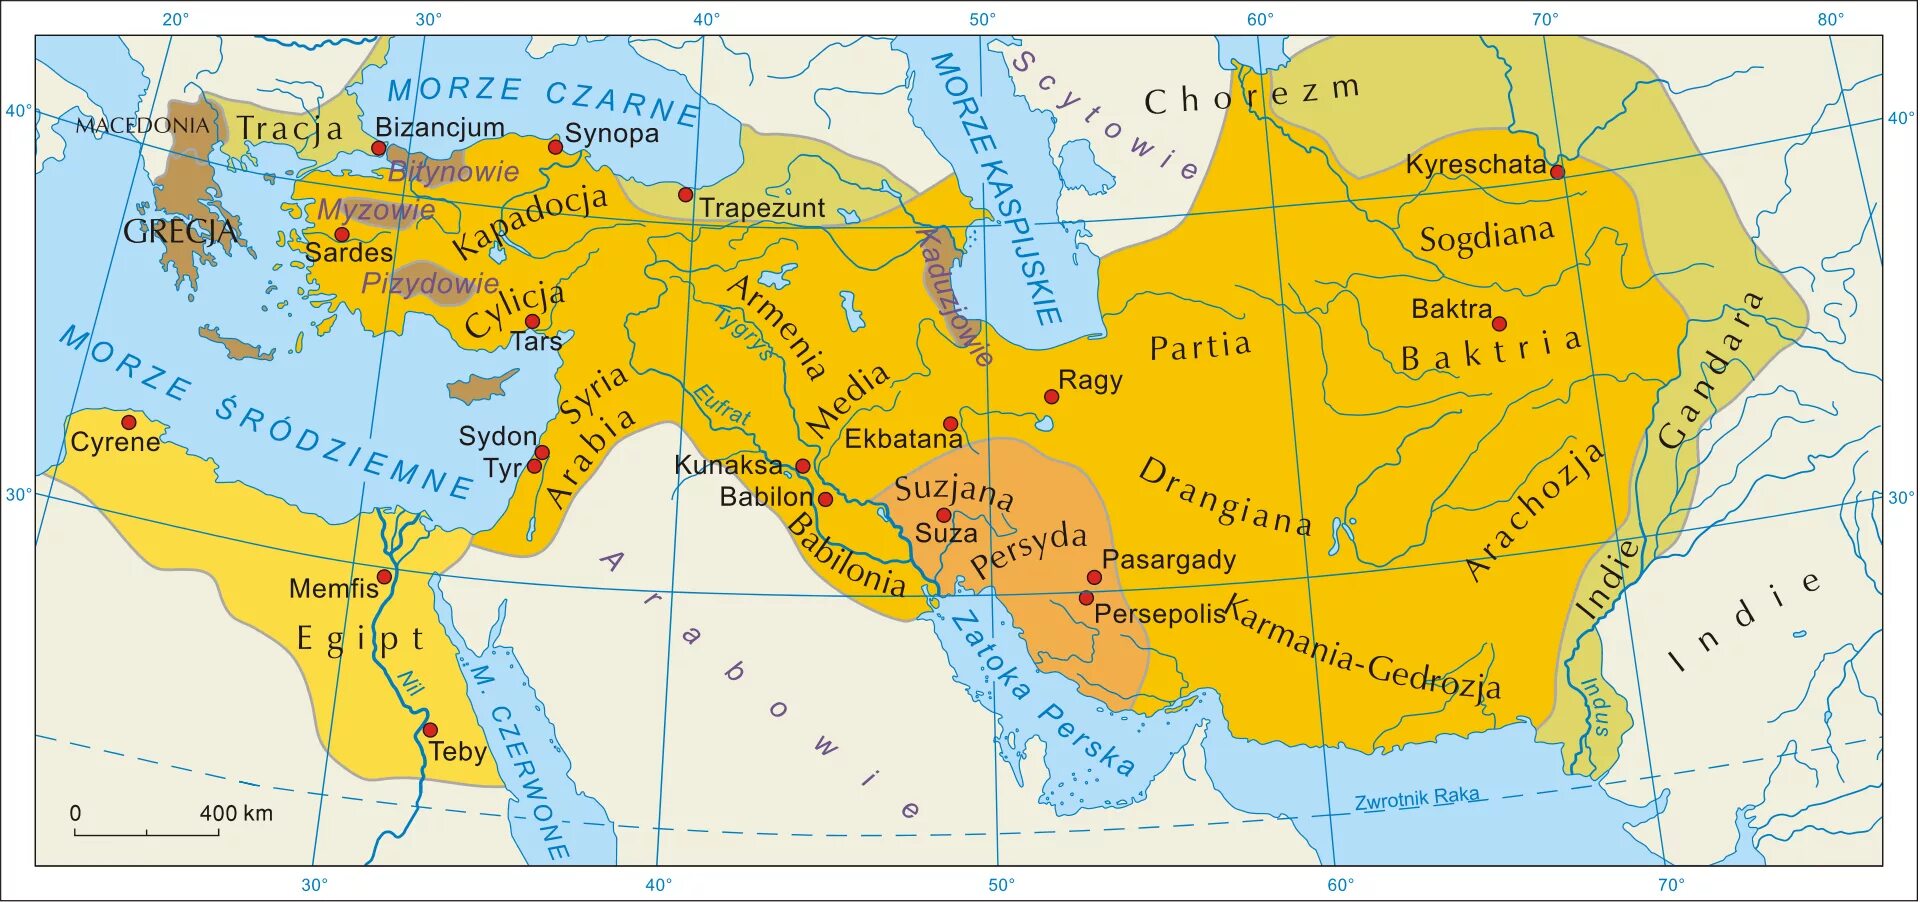 Персидская держава на карте 5. Персидская Империя Ахеменидов. Персидская держава в 6 в до н э. Персия 5 век до н.э карта. Персидский Ахеменидов Персия.